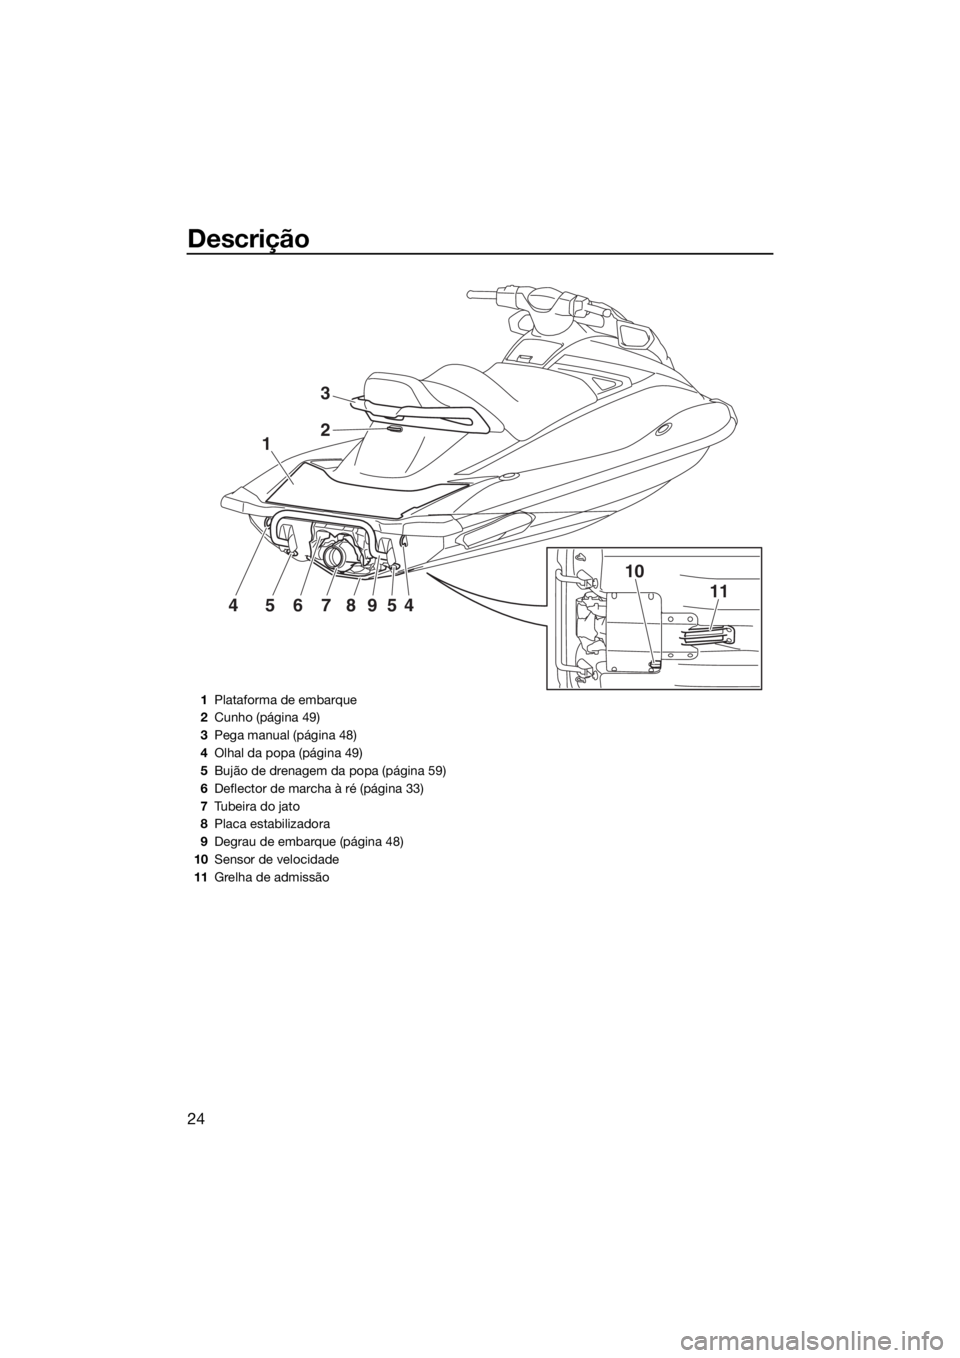 YAMAHA VX 2017  Manual de utilização (in Portuguese) Descrição
24
1
10
1145678954
2
3
1Plataforma de embarque
2Cunho (página 49)
3Pega manual (página 48)
4Olhal da popa (página 49)
5Bujão de drenagem da popa (página 59)
6Deflector de marcha à r�